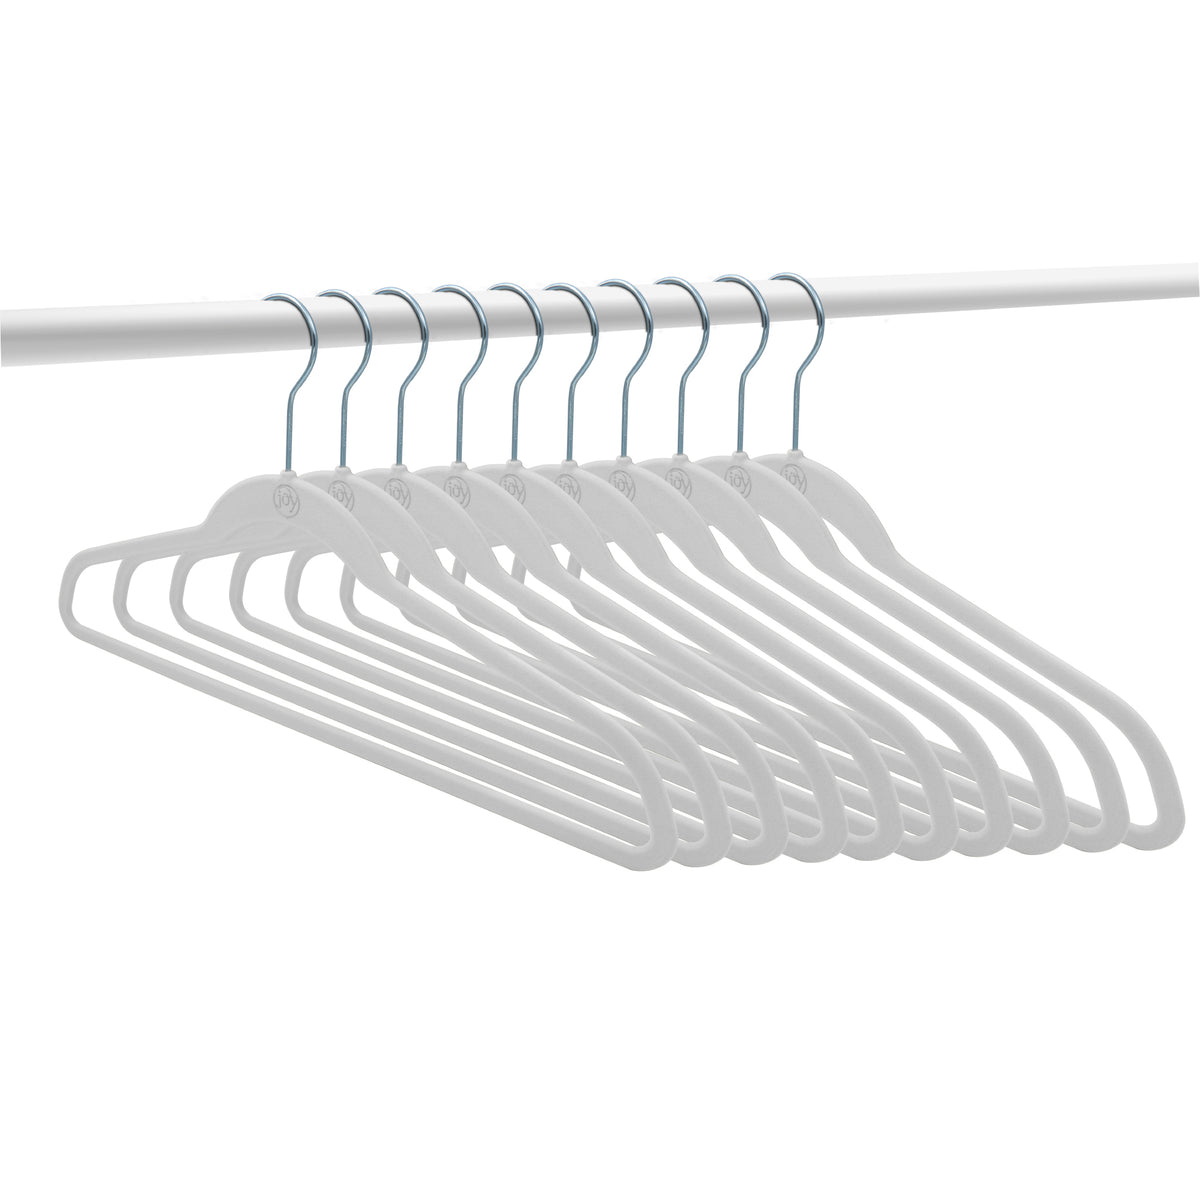 The JOY Hangers Anti-Microbial 37-piece Set with Shelf Organizer